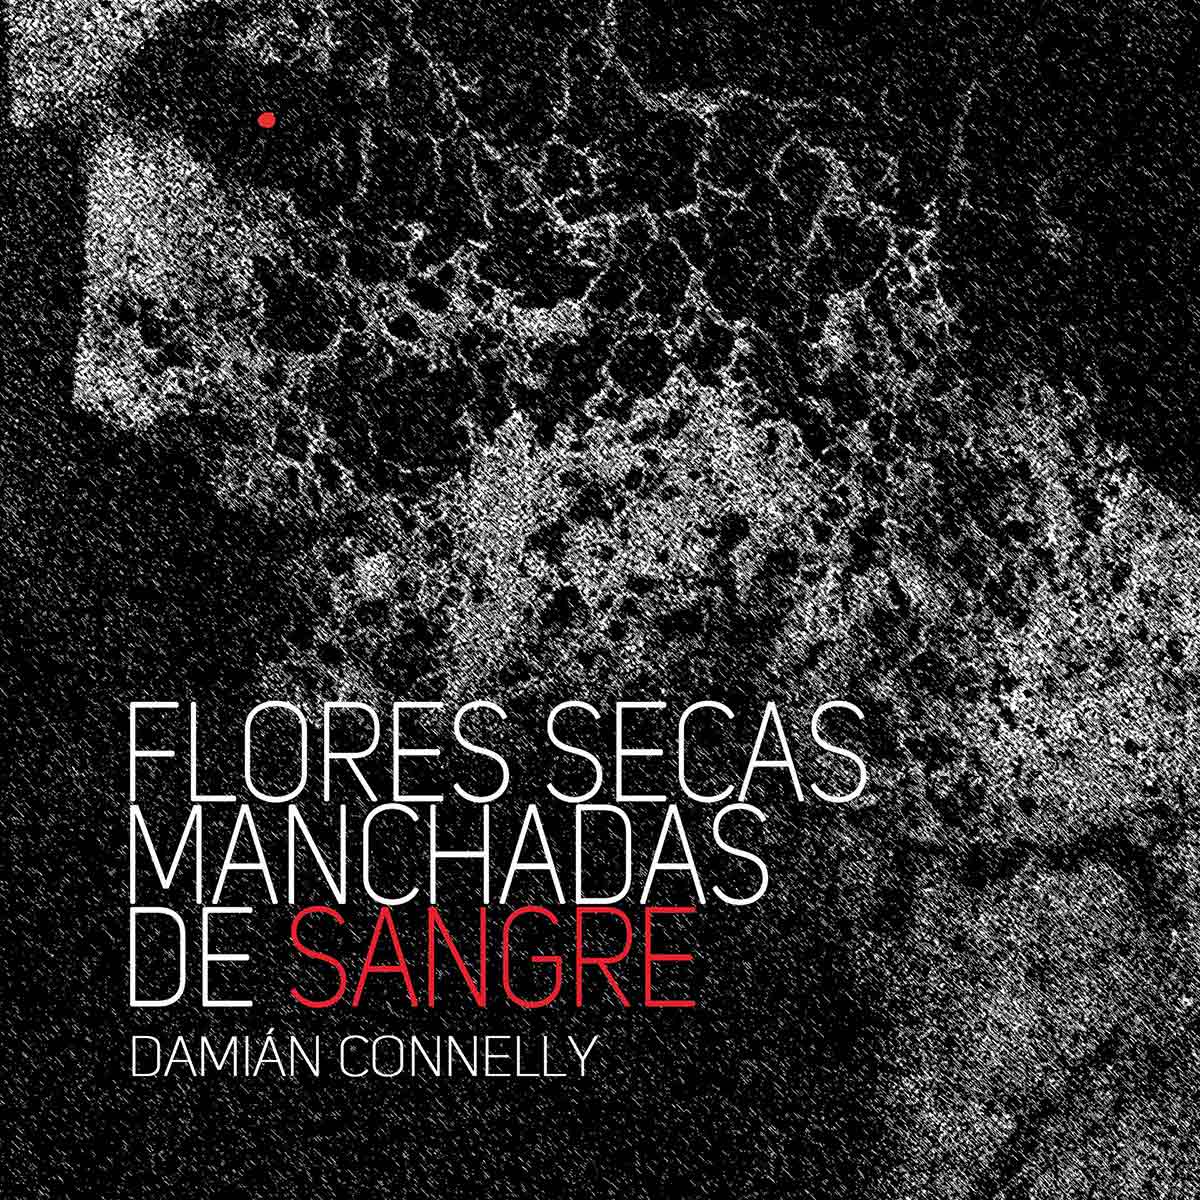 Tapa de "Flores secas manchadas de sangre", de Damián Connelly 